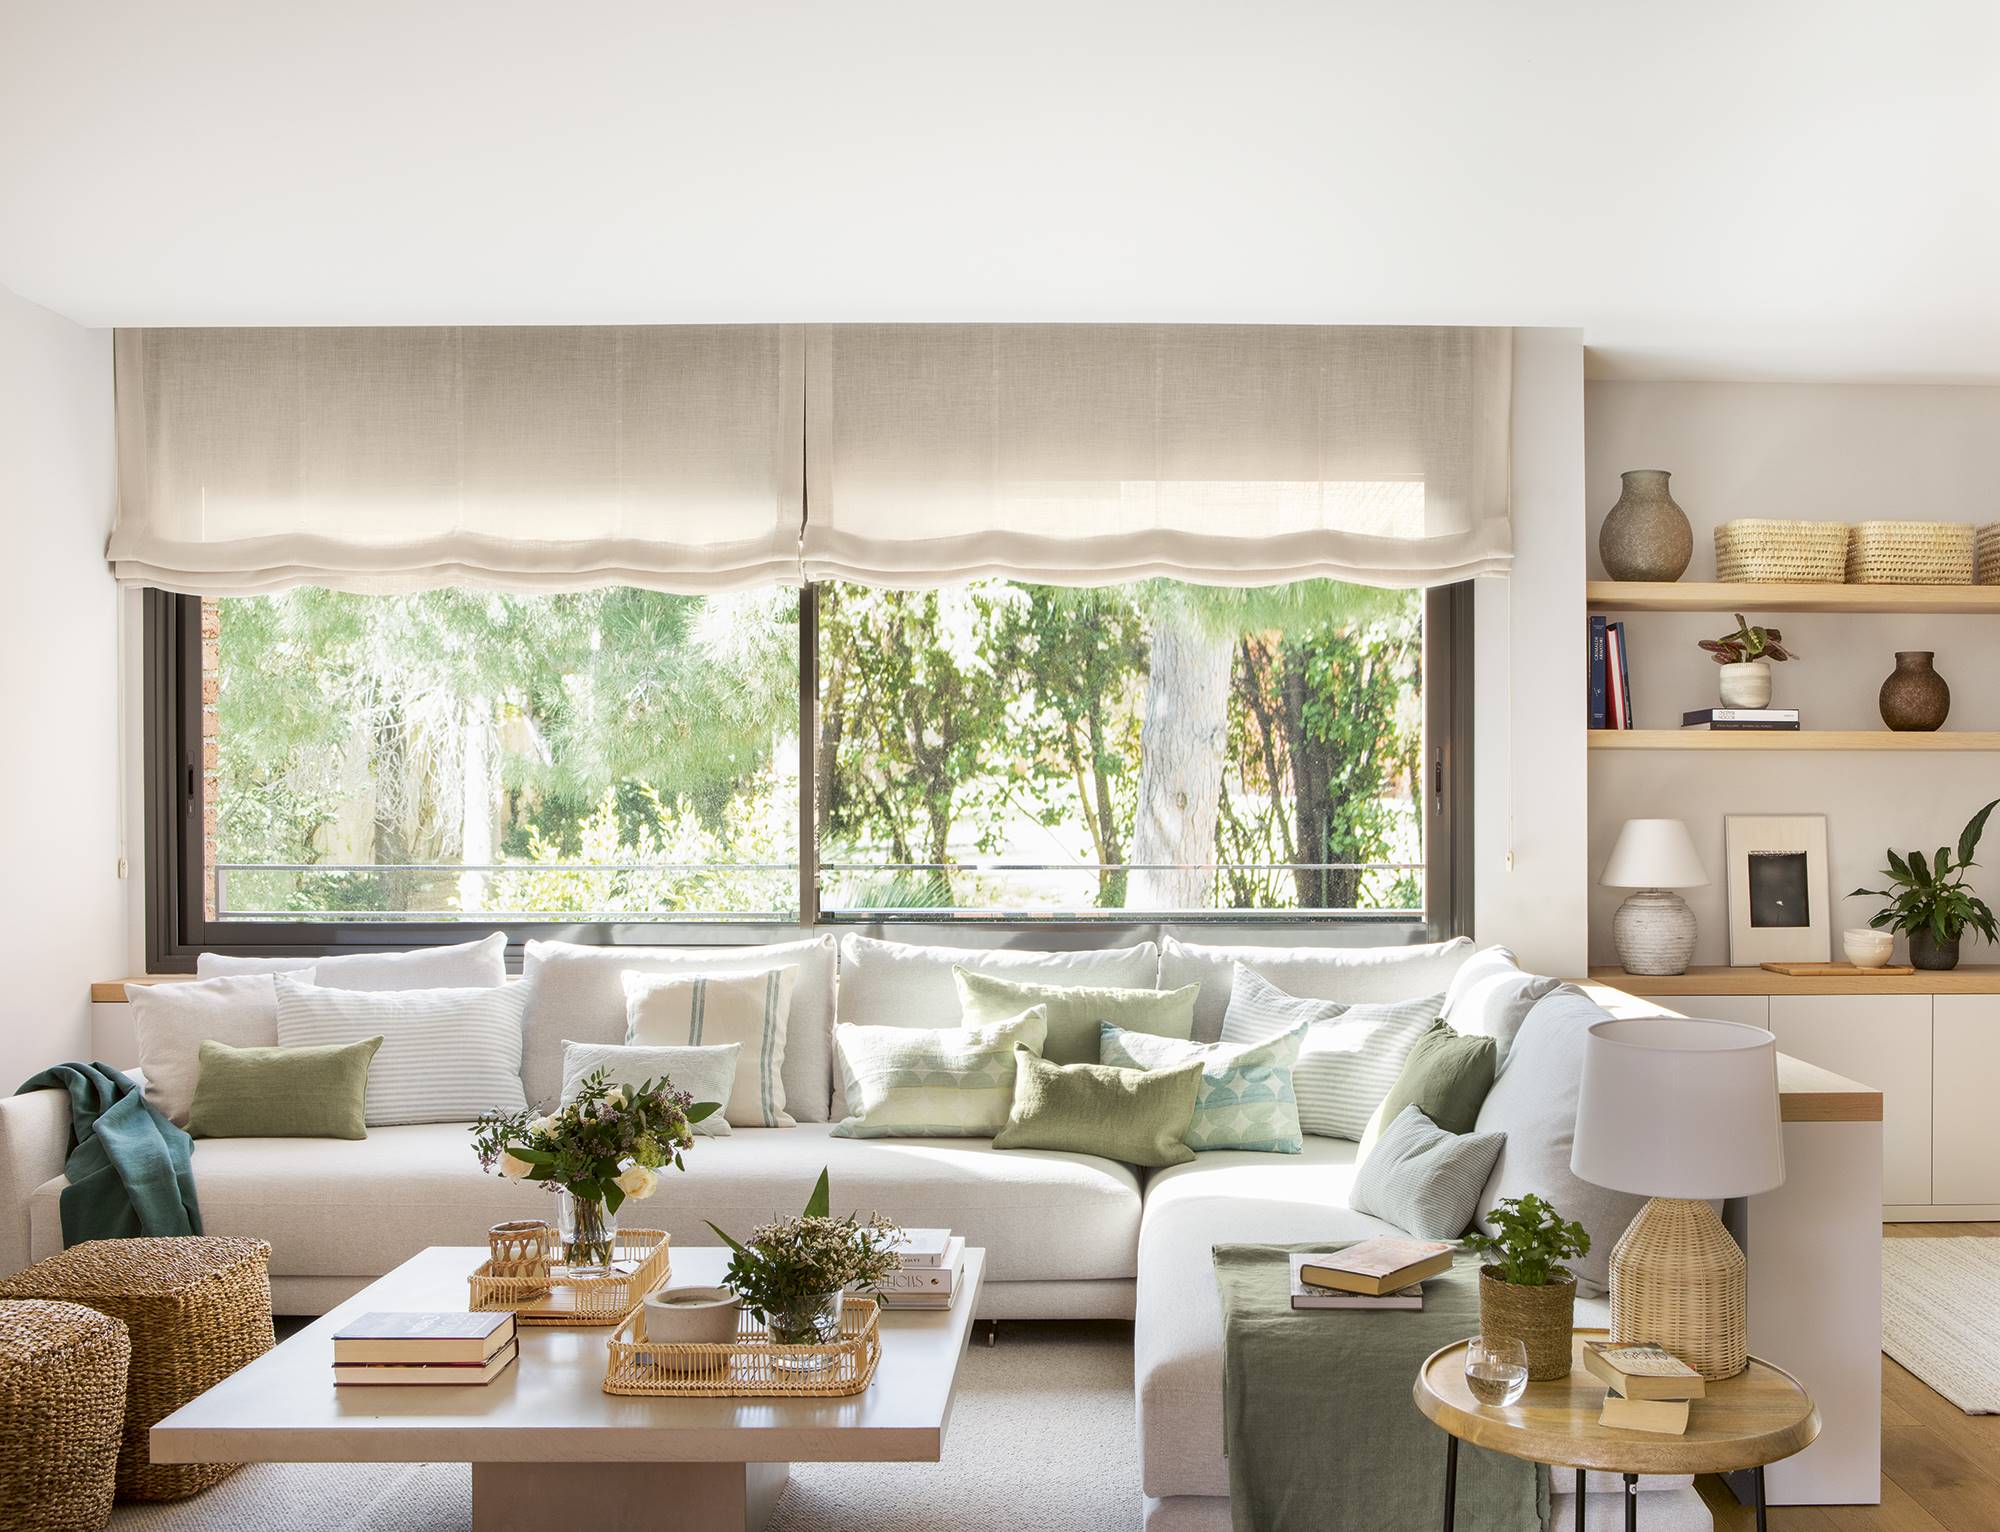 Salón blanco con sofá esquinero, pufs de fibras, cojines verdes y muebles a medida.